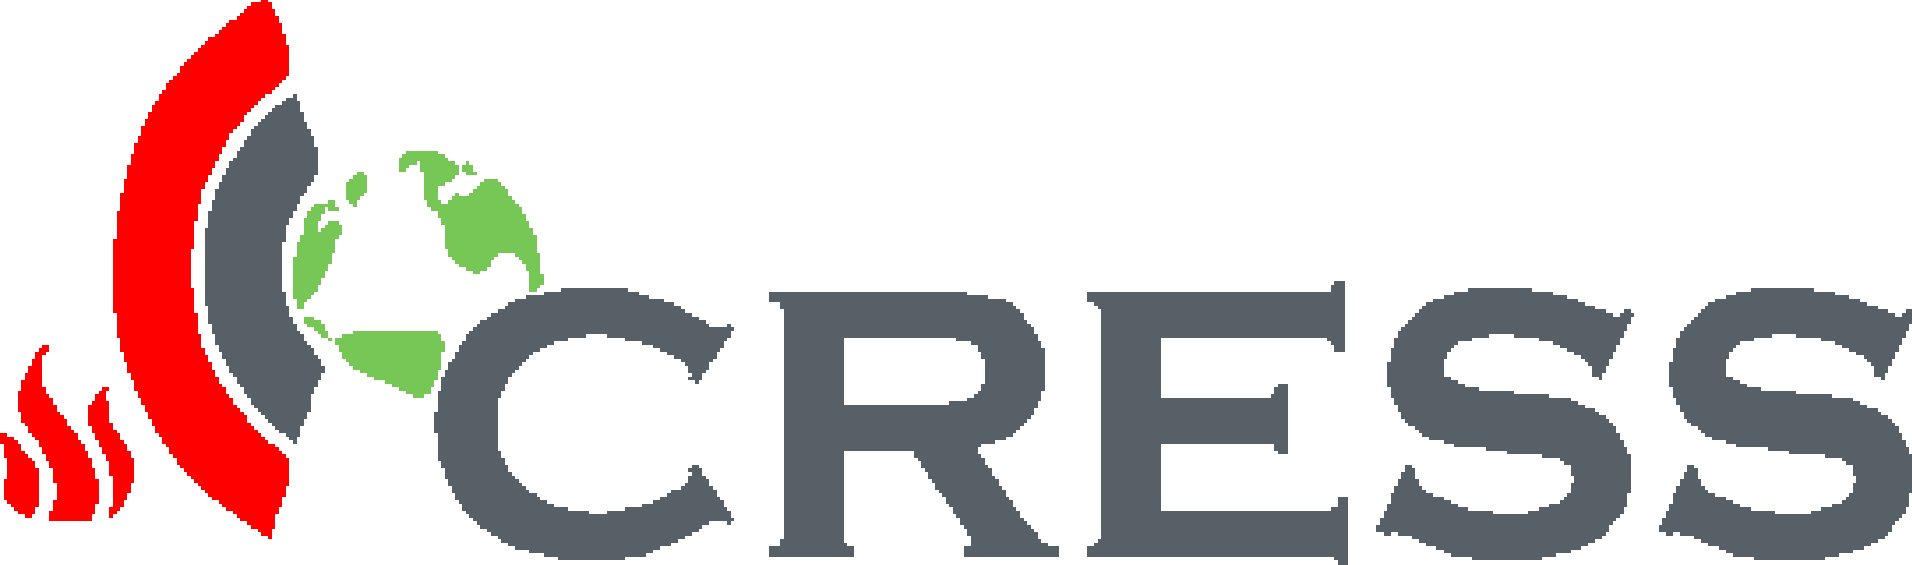 klein logo cress - IMPROOF